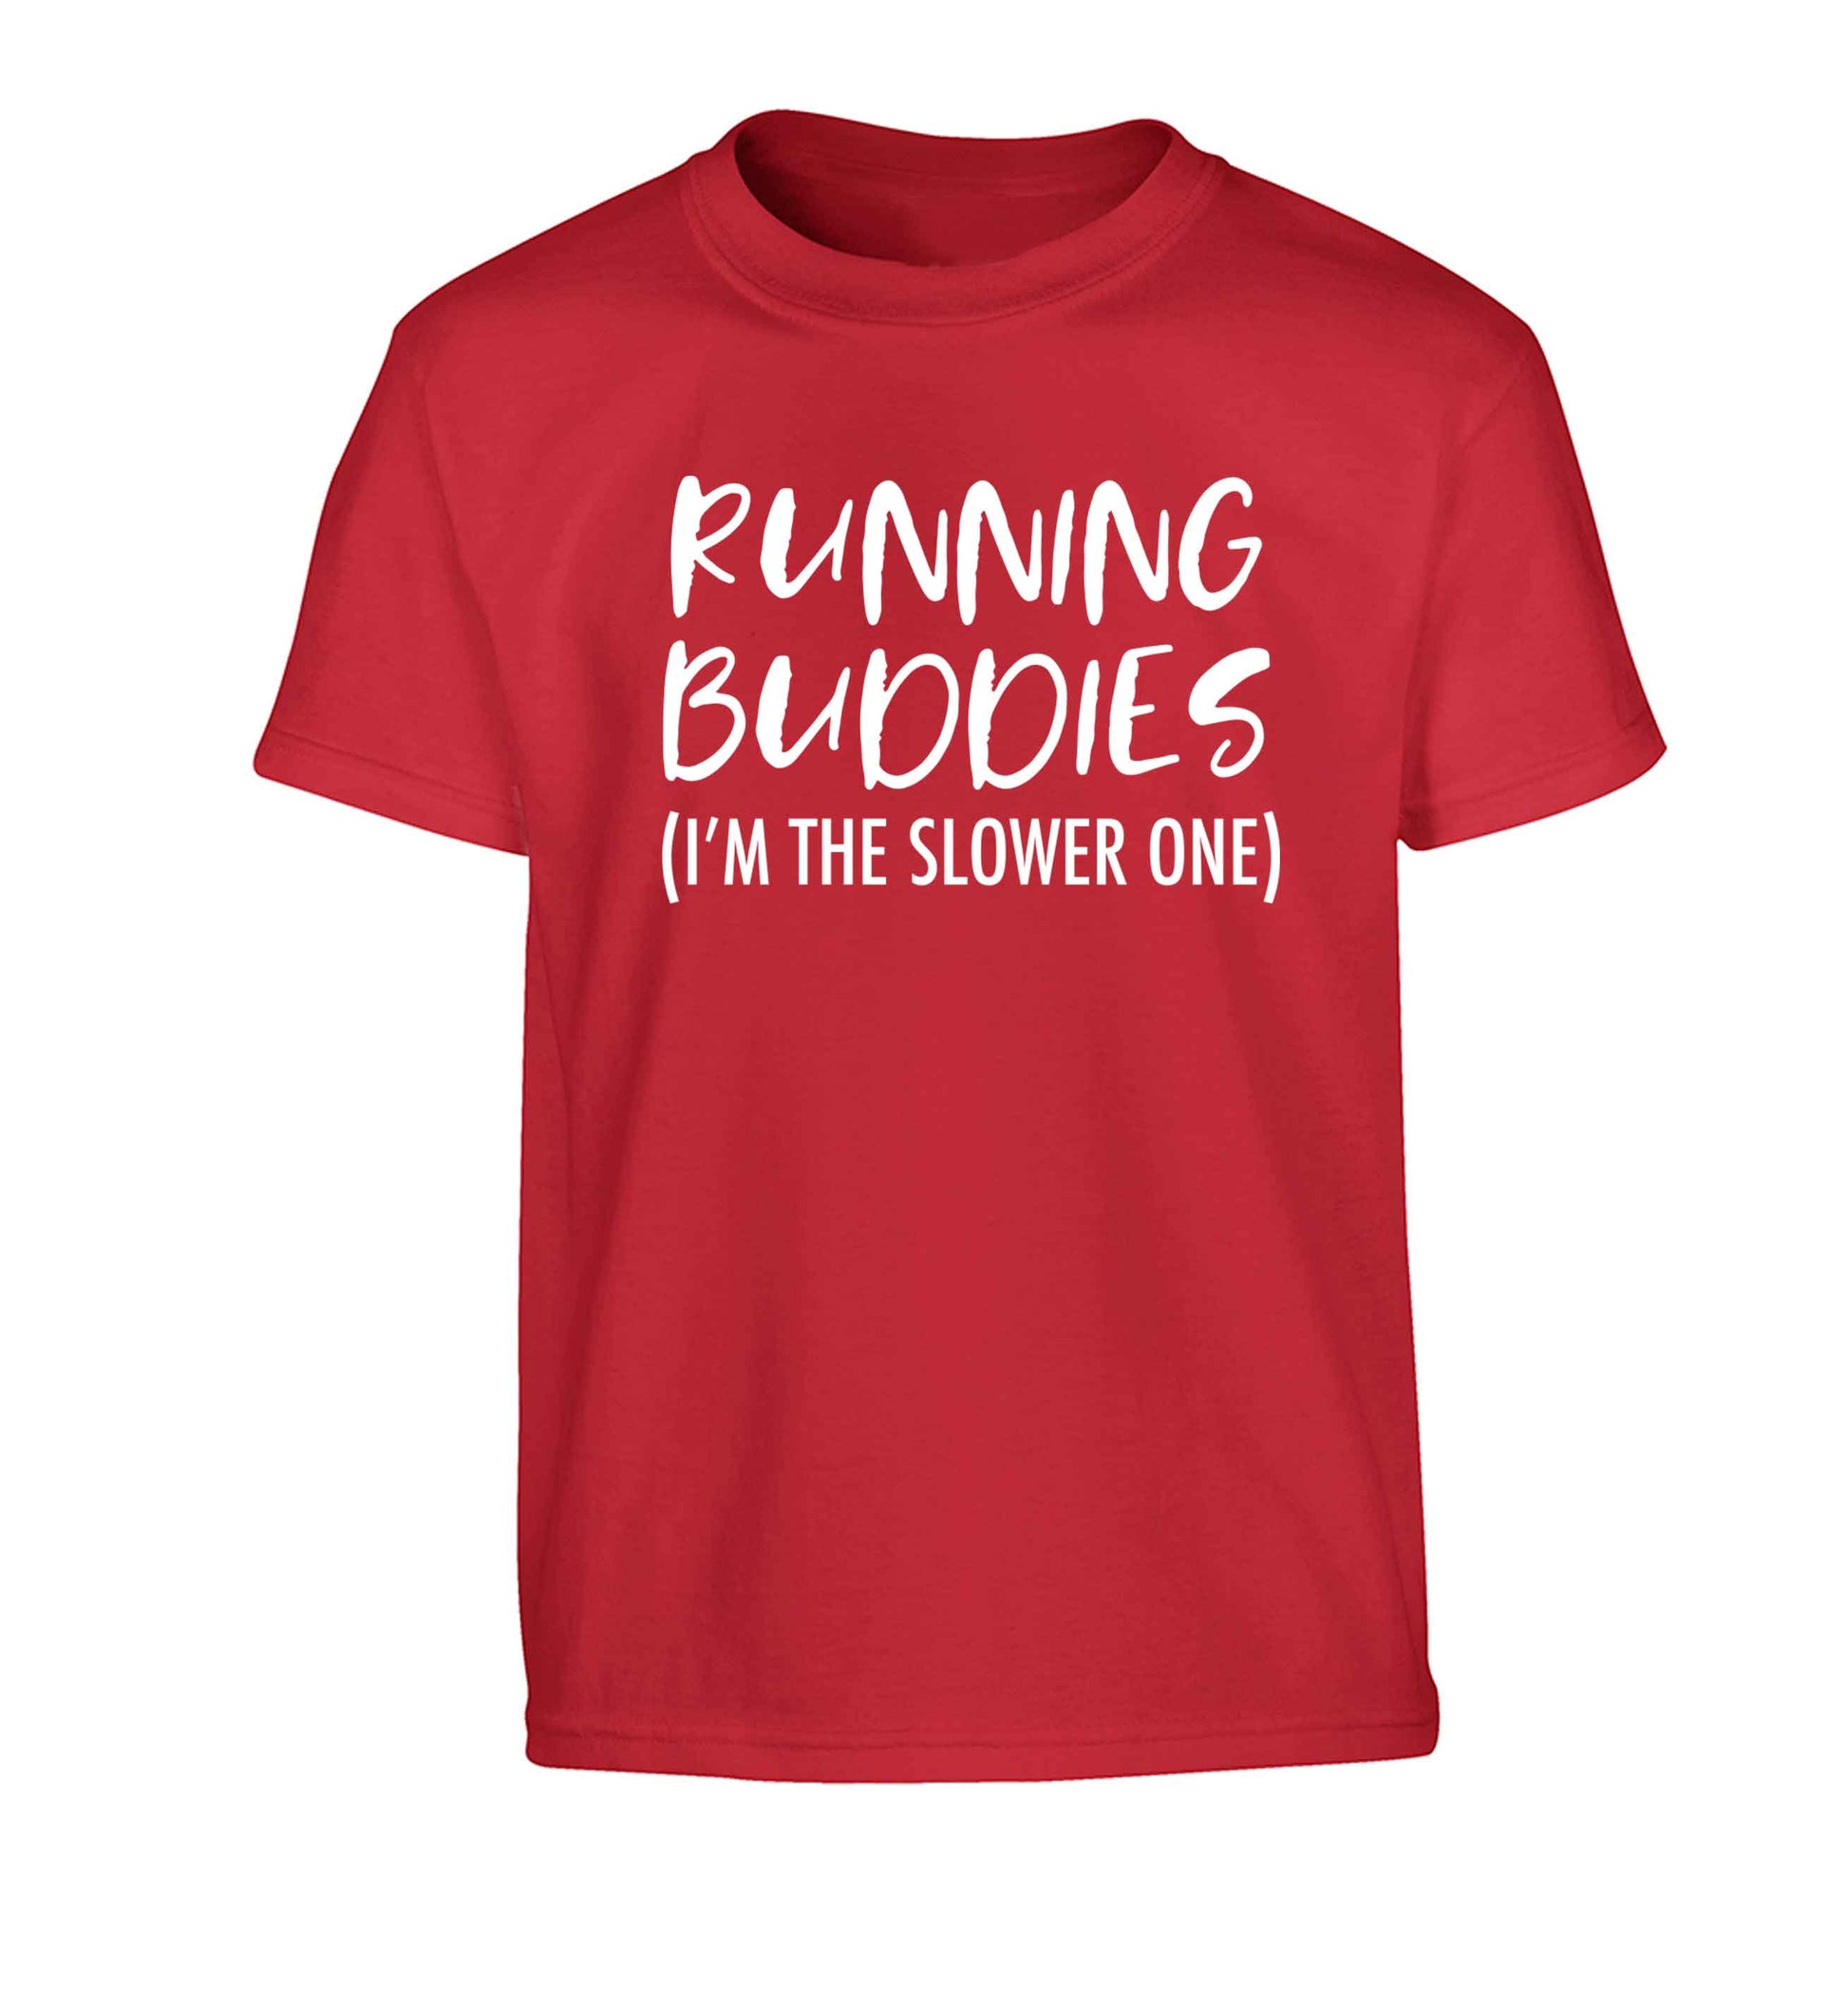 Running buddies (I'm the slower one) Children's red Tshirt 12-13 Years